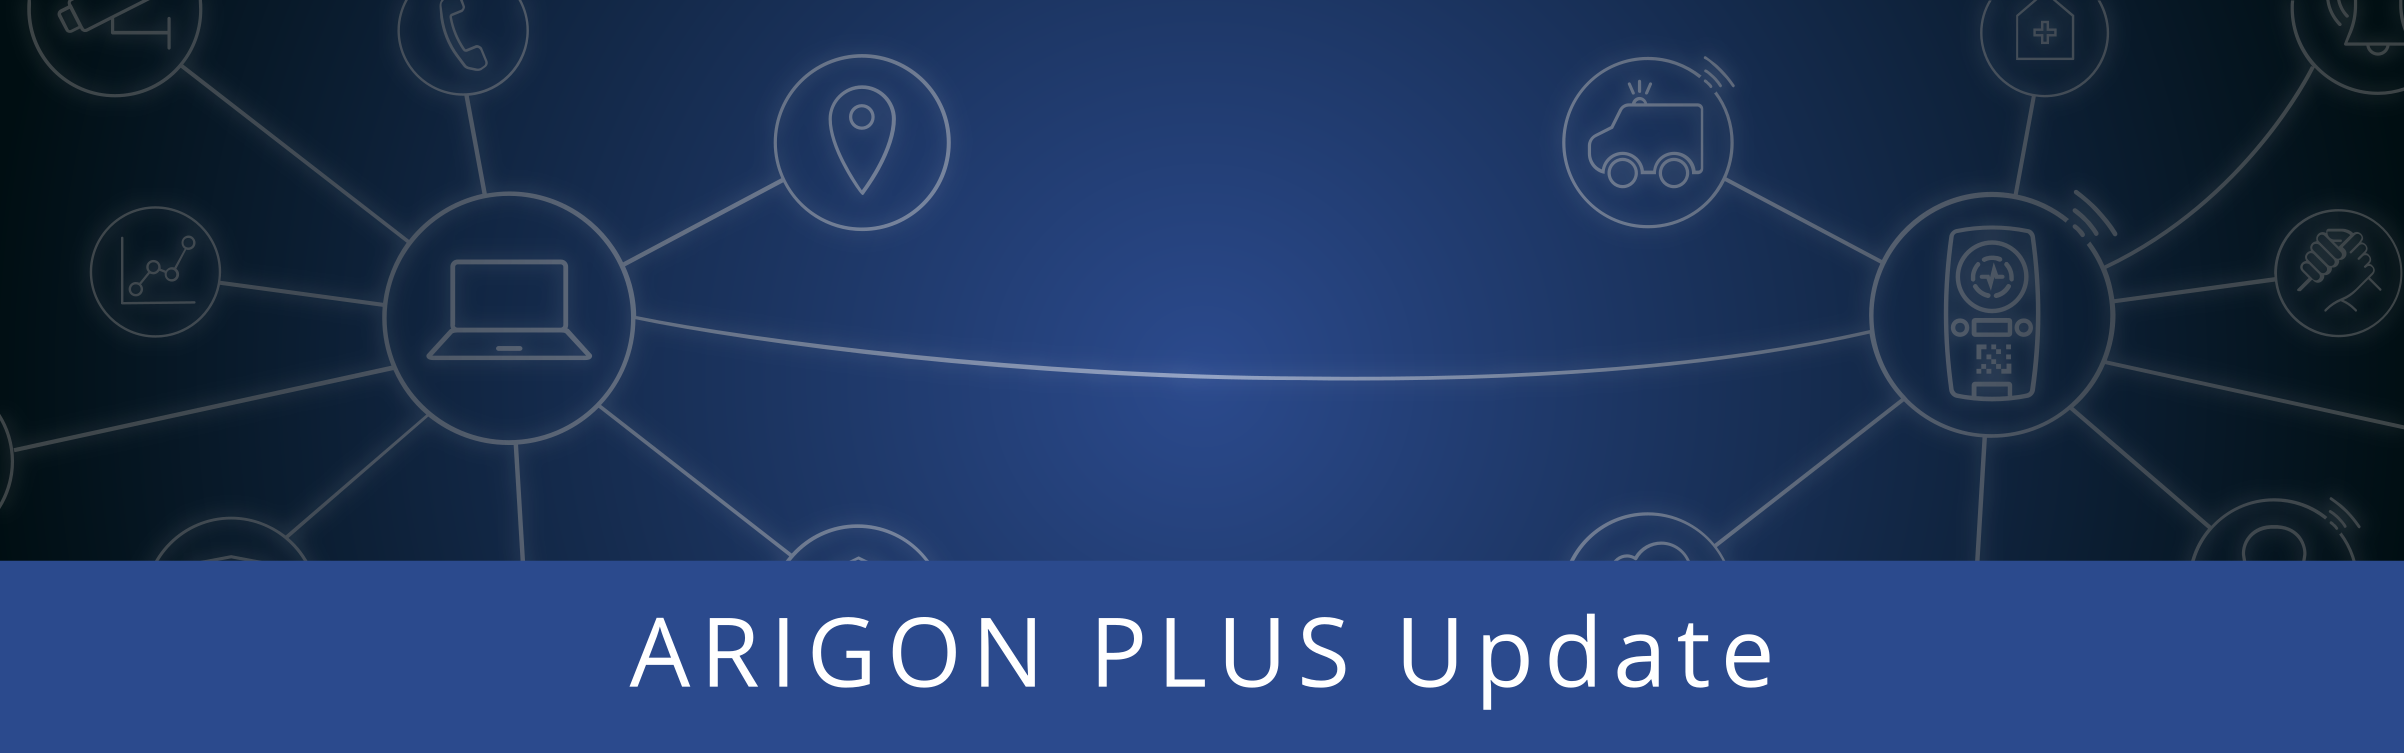 ARIGON PLUS - Update Version 6.0 (kostenfrei)